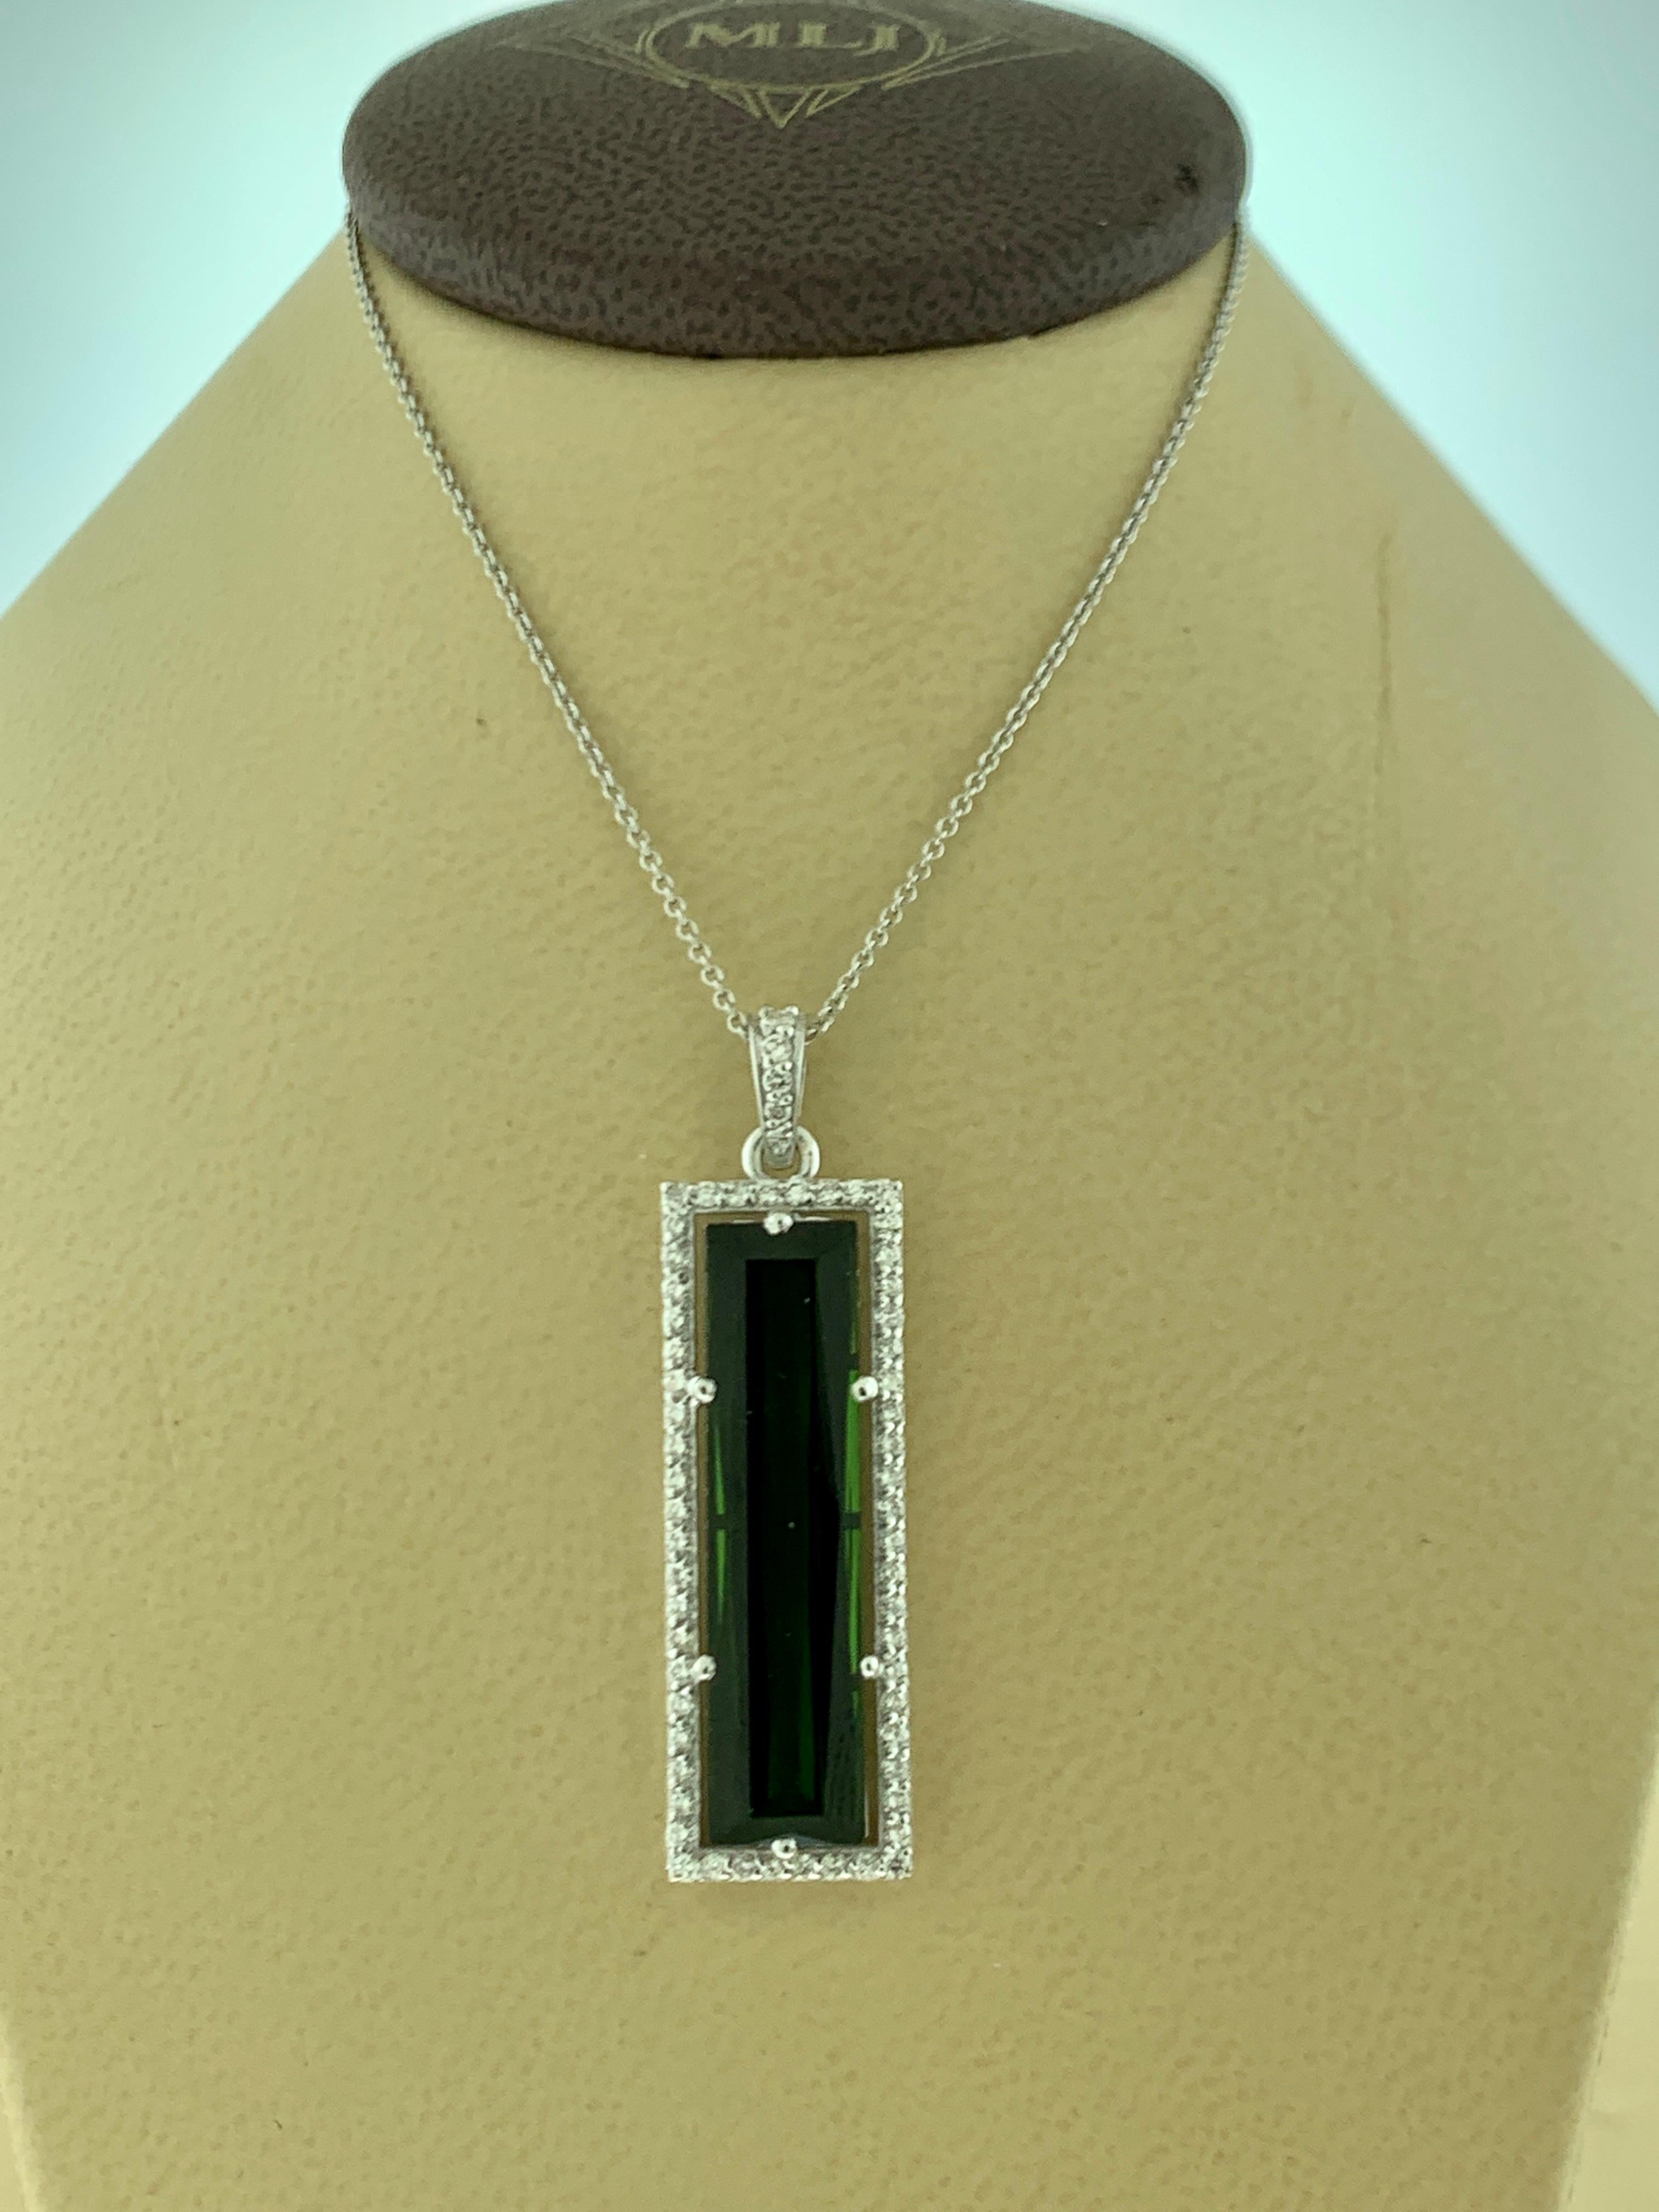 Women's 11 Carat Green Tourmaline and 1.2 Carat Diamond Pendant / Necklace 18 Karat Gold